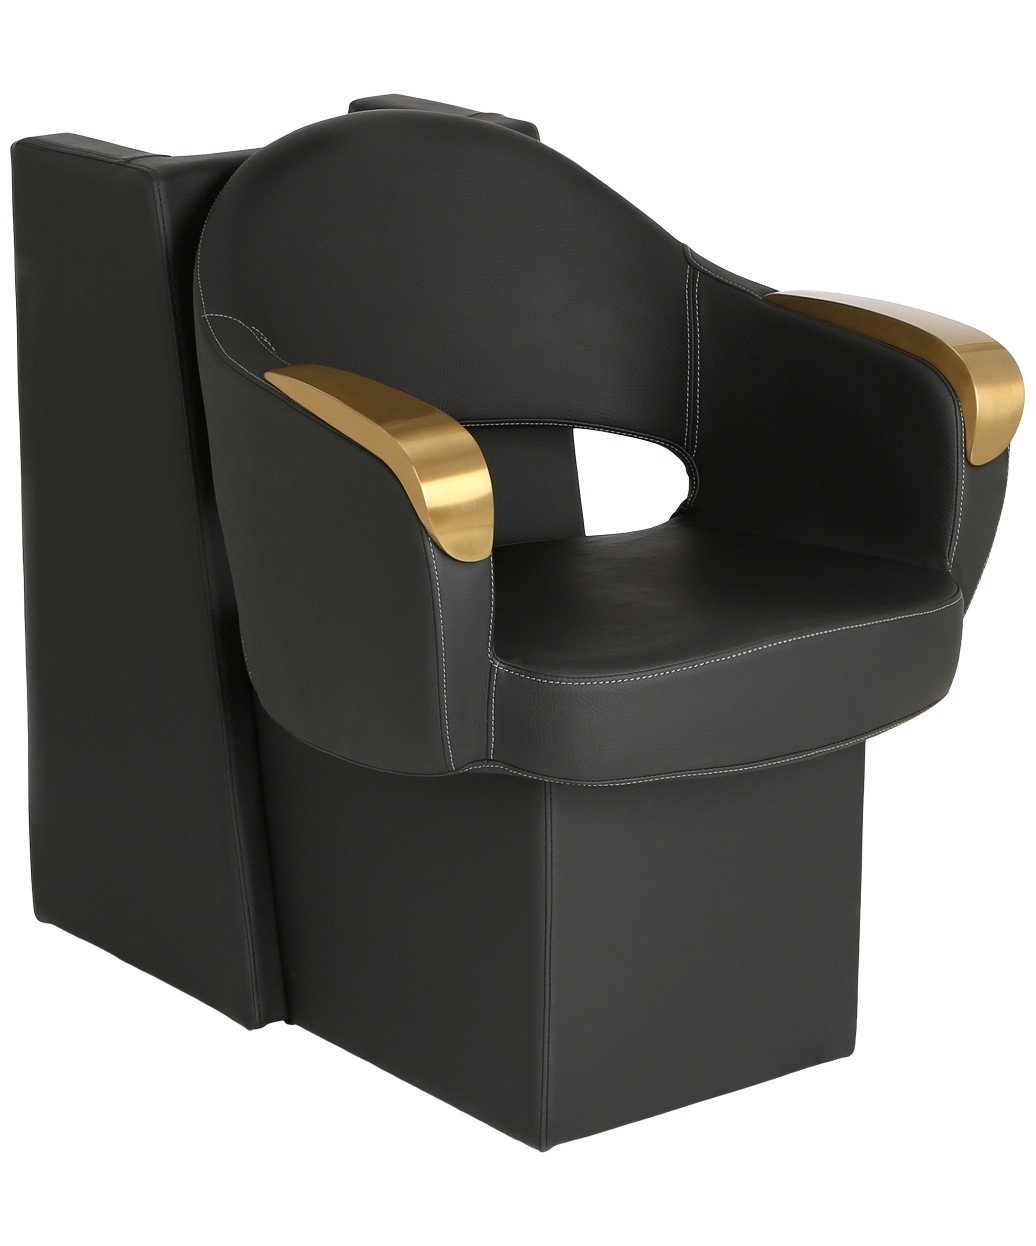 Luna Gold Dryer Chair